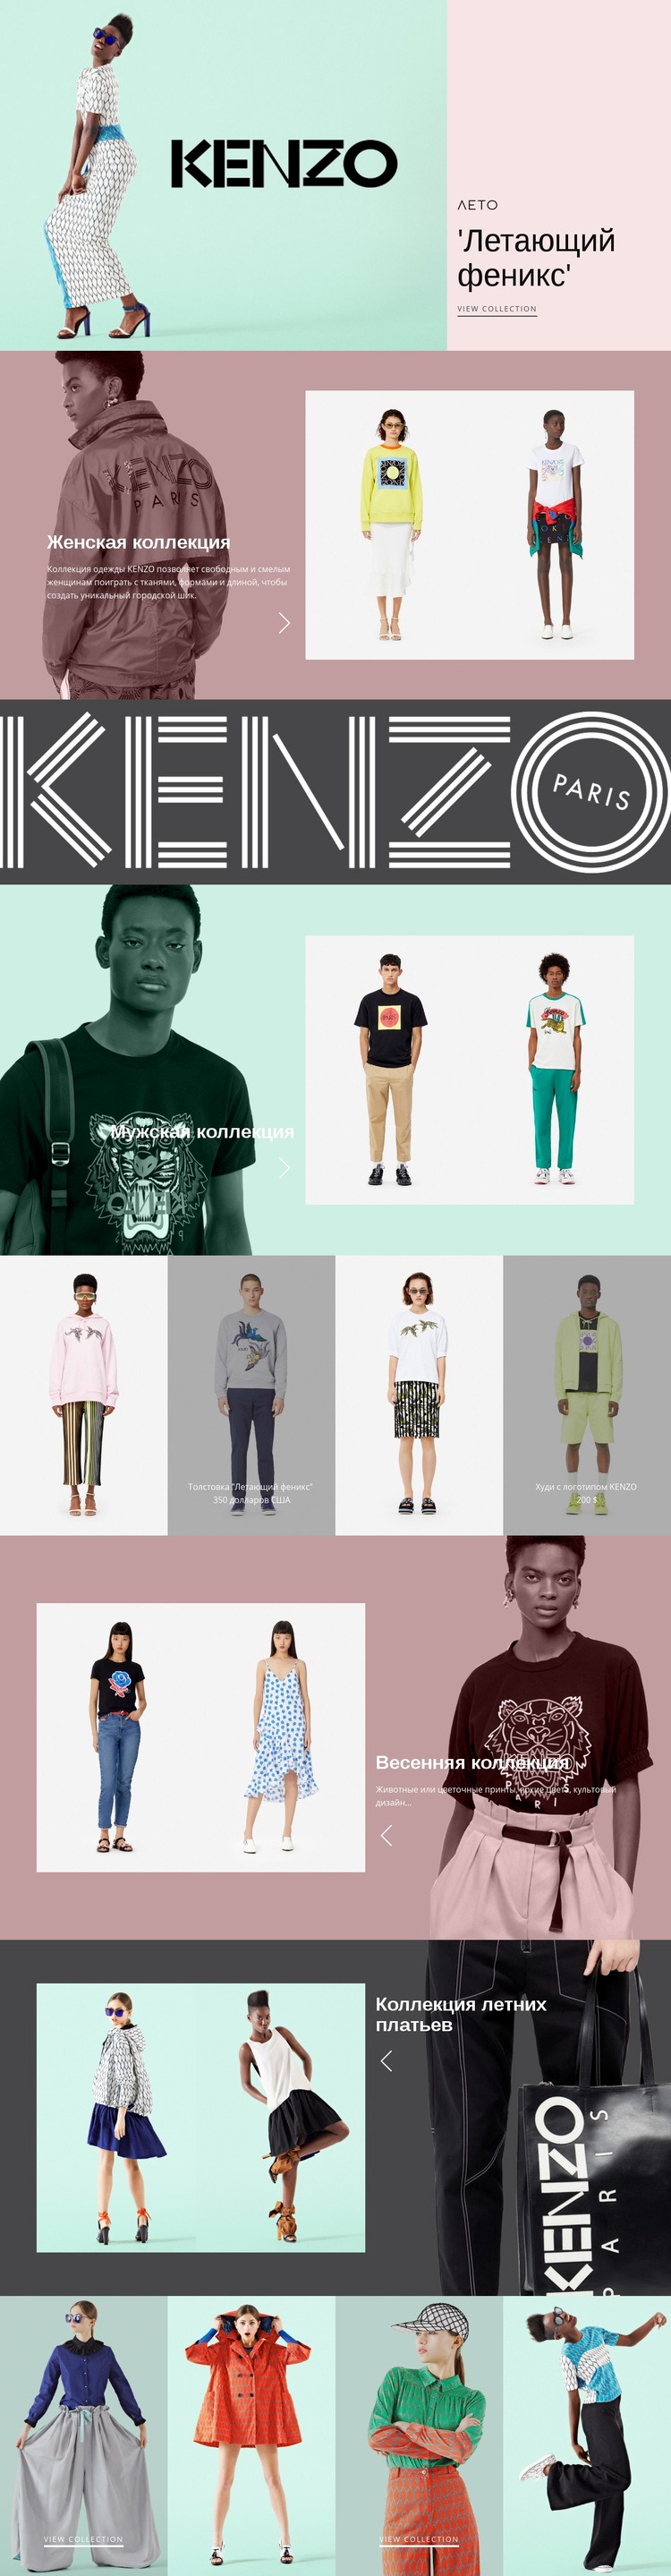 Ателье современной моды Мокап веб-сайта